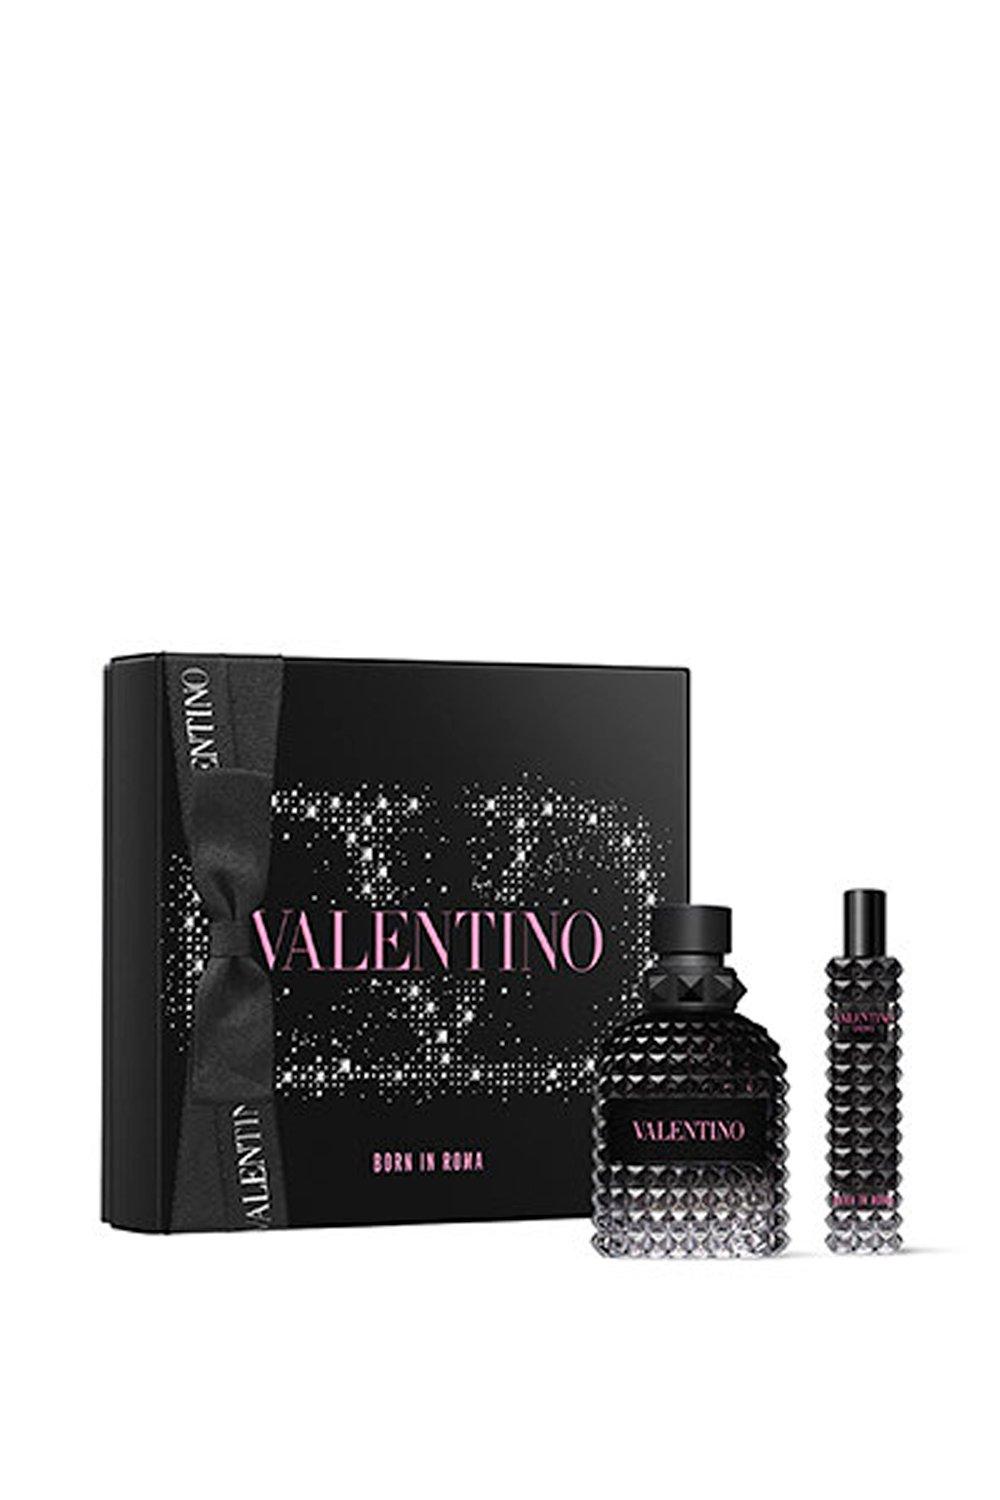 Photos - Women's Fragrance Valentino Born In Roma Uomo Eau De Toilette 50ml Gift Set 